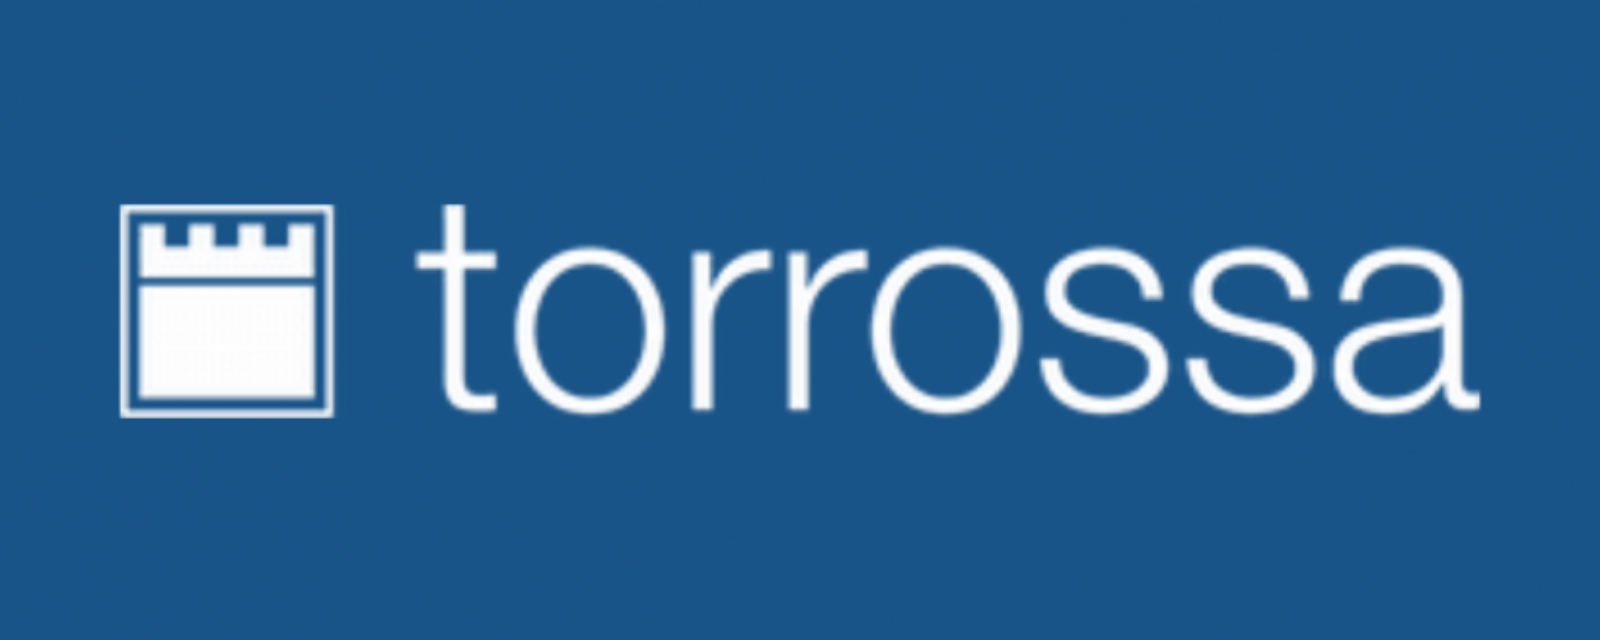 Torrossa Edición Española Online